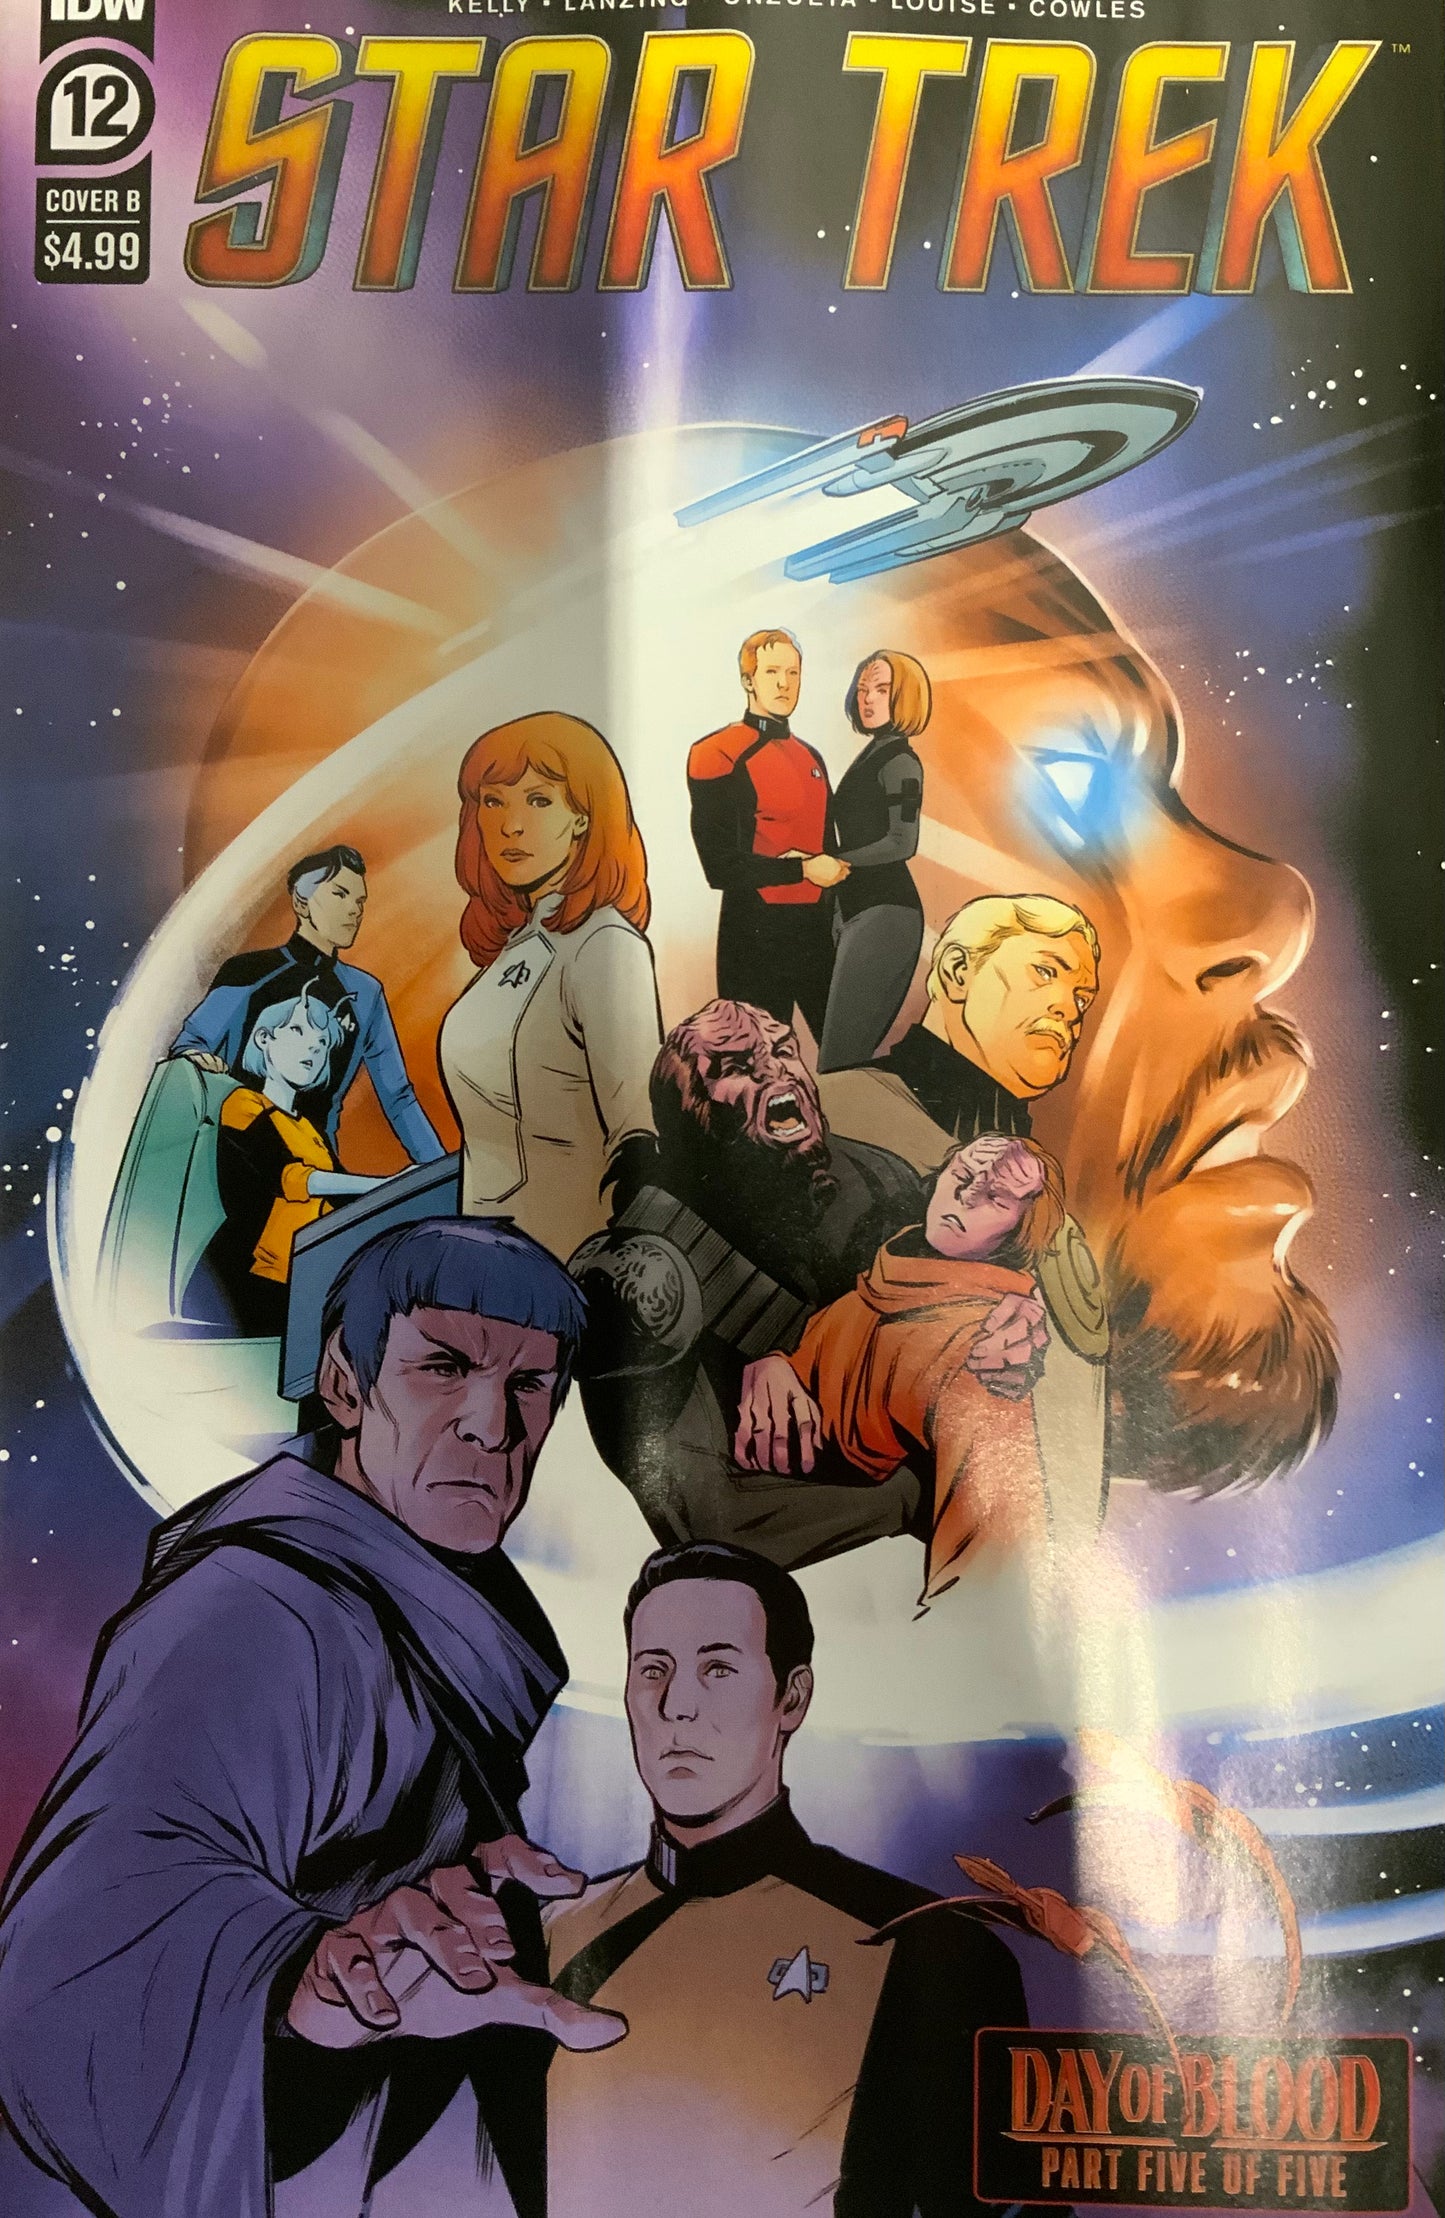 Star Trek: Day of Blood Part 5 issue 12